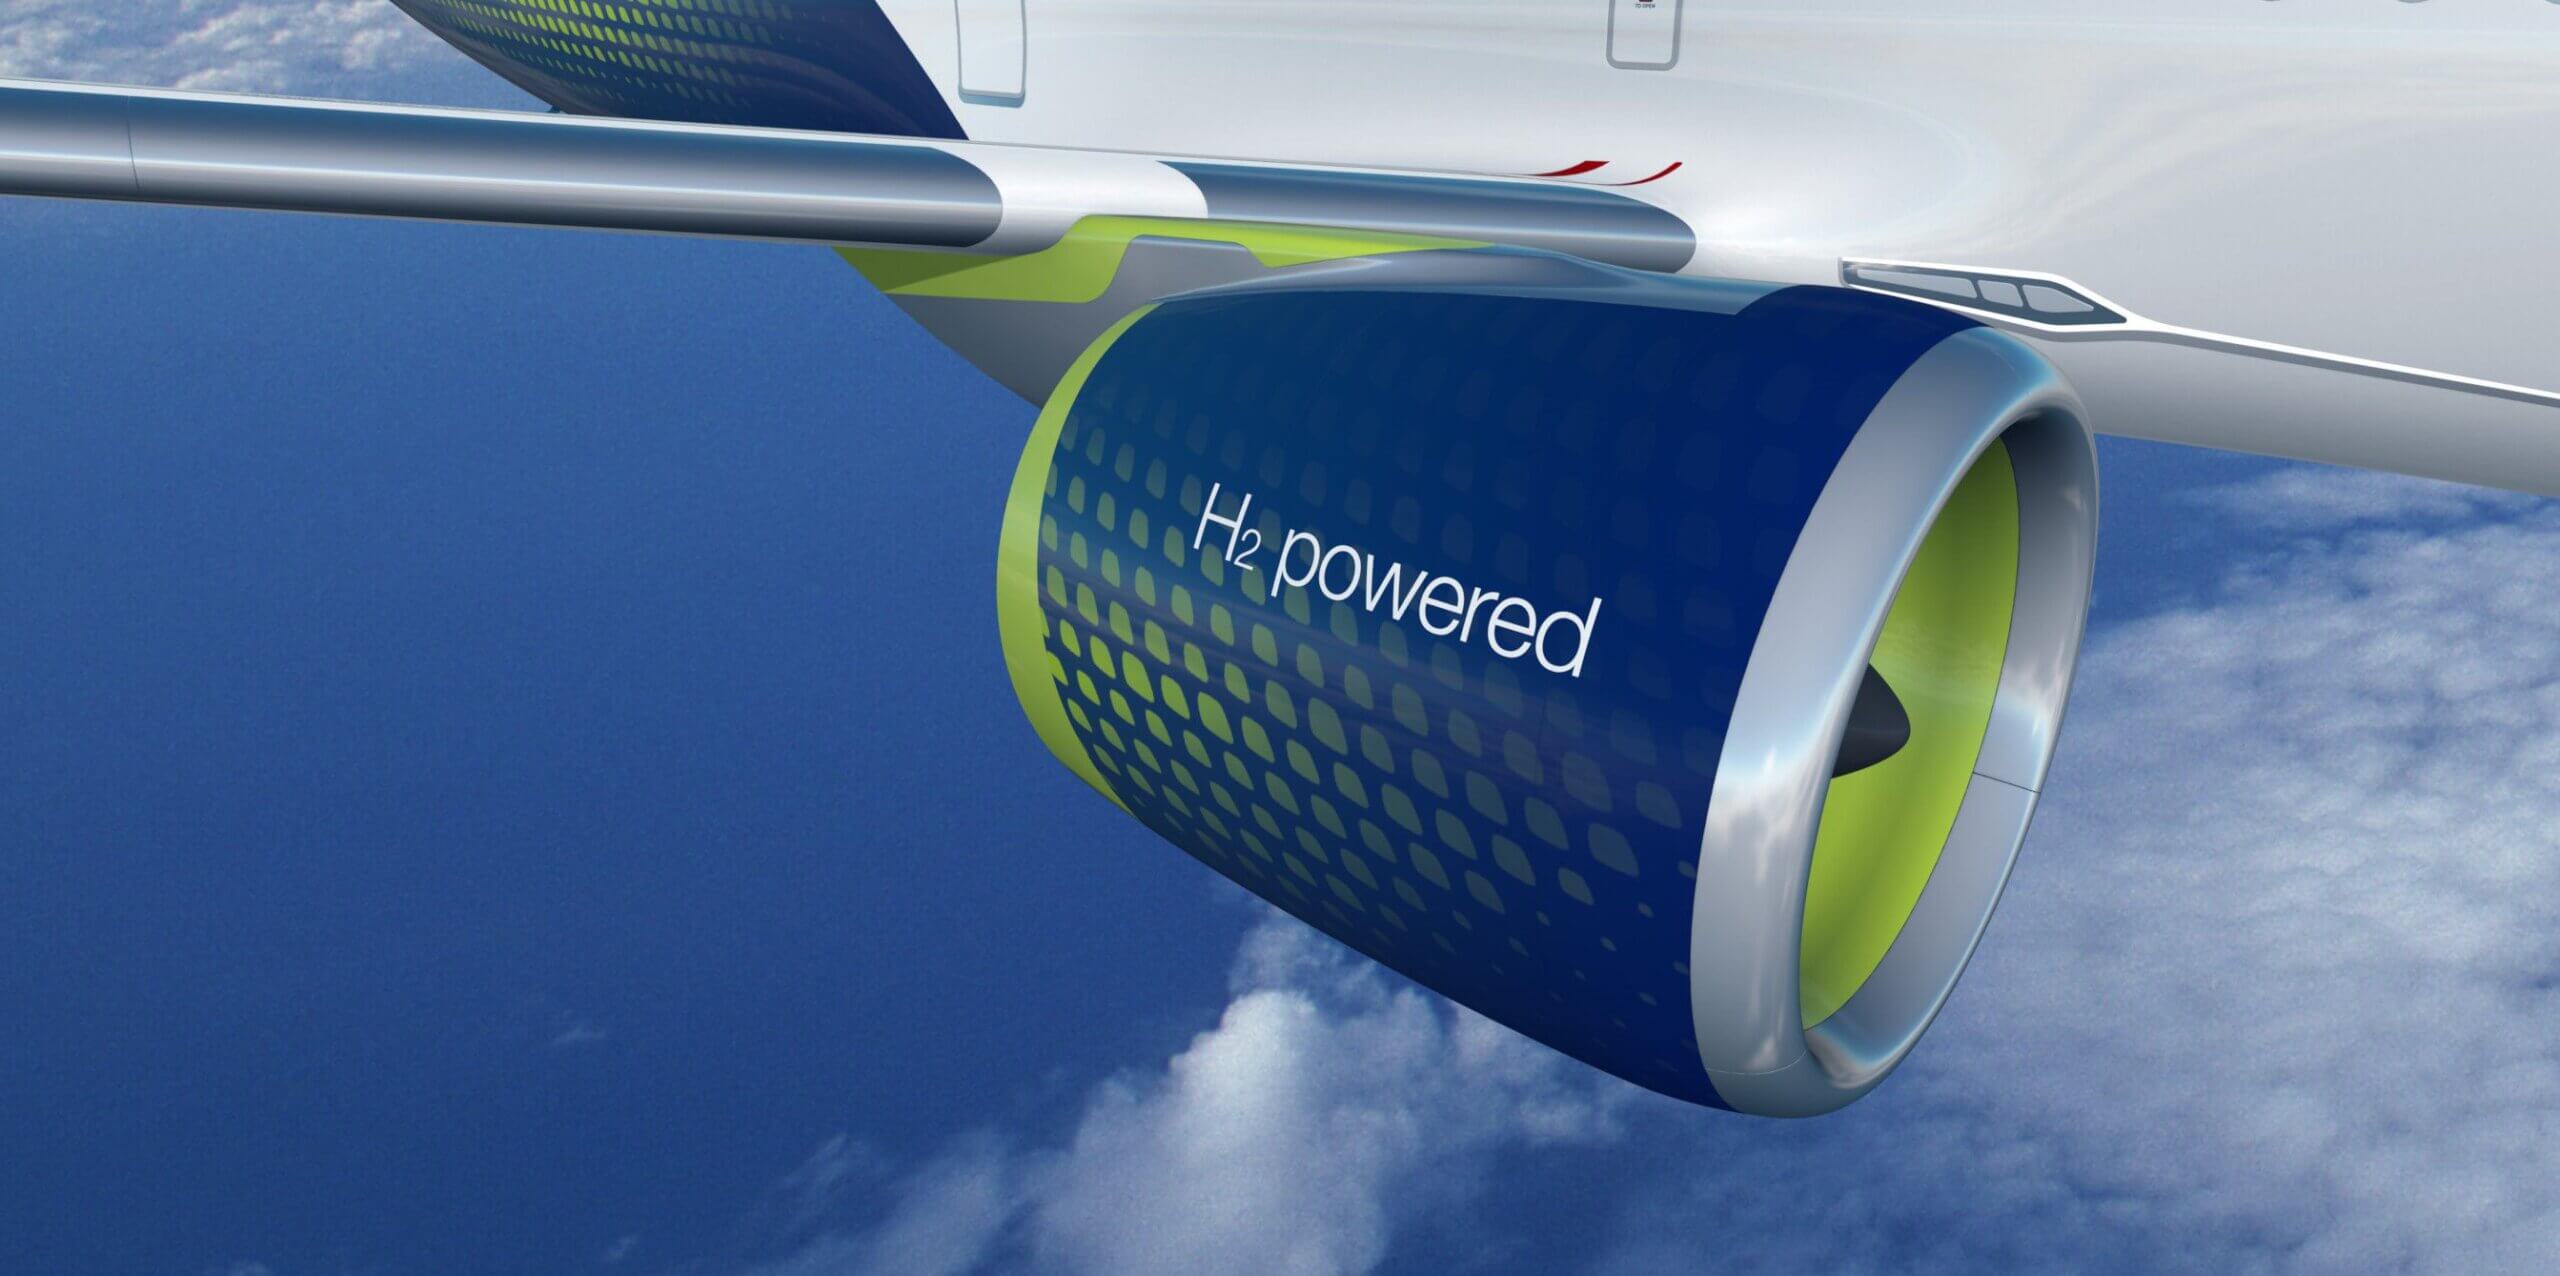 Sneak peek: Airbus seeing a convergence towards hydrogen